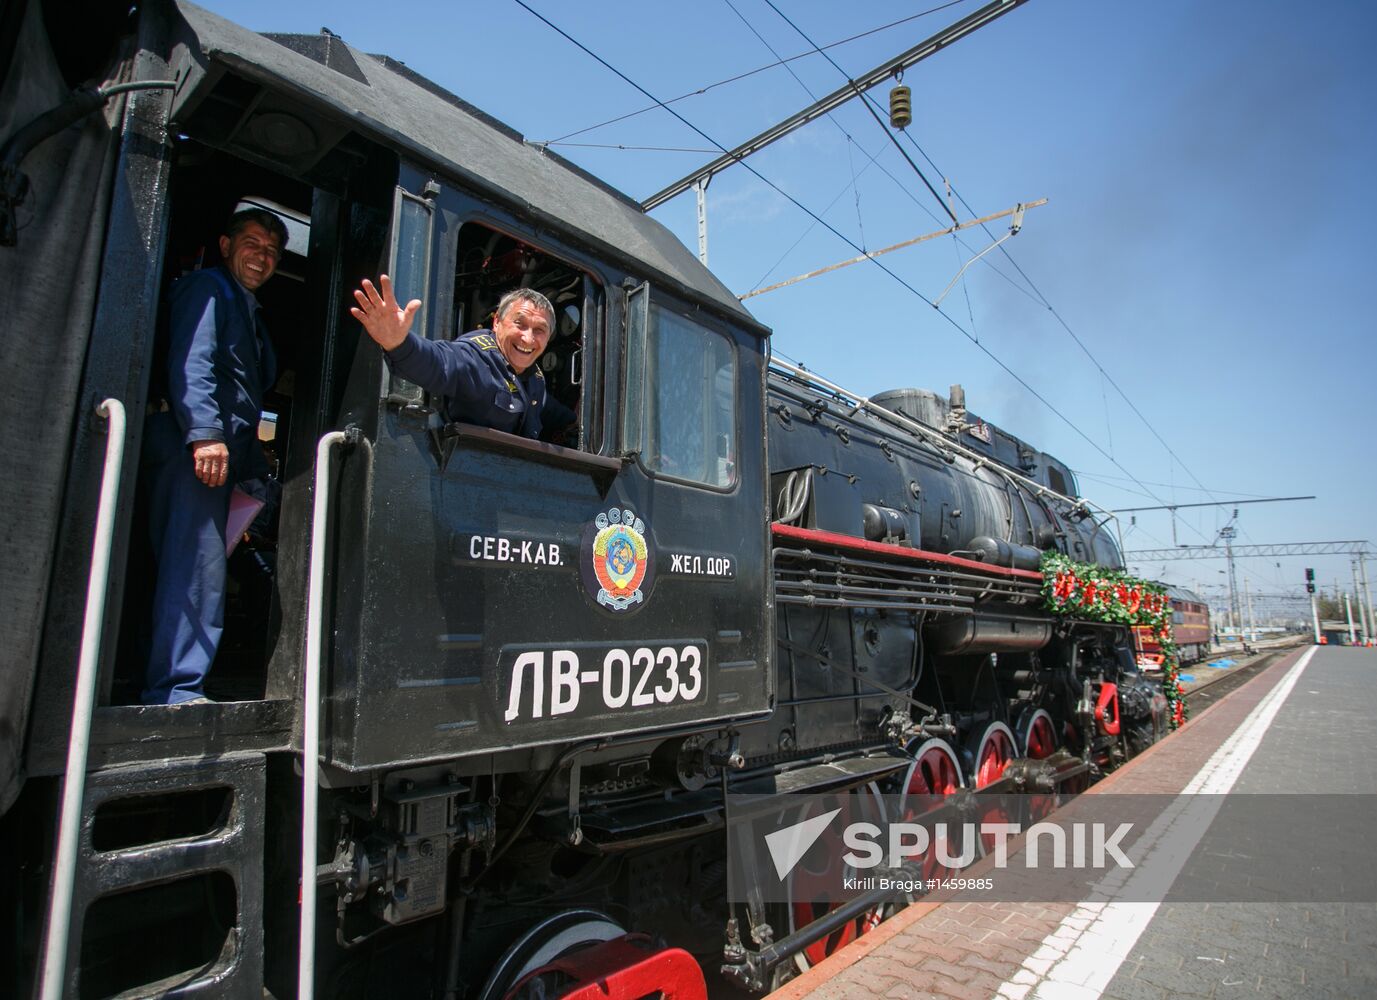 Retro train "Victory" arrives in Volgograd